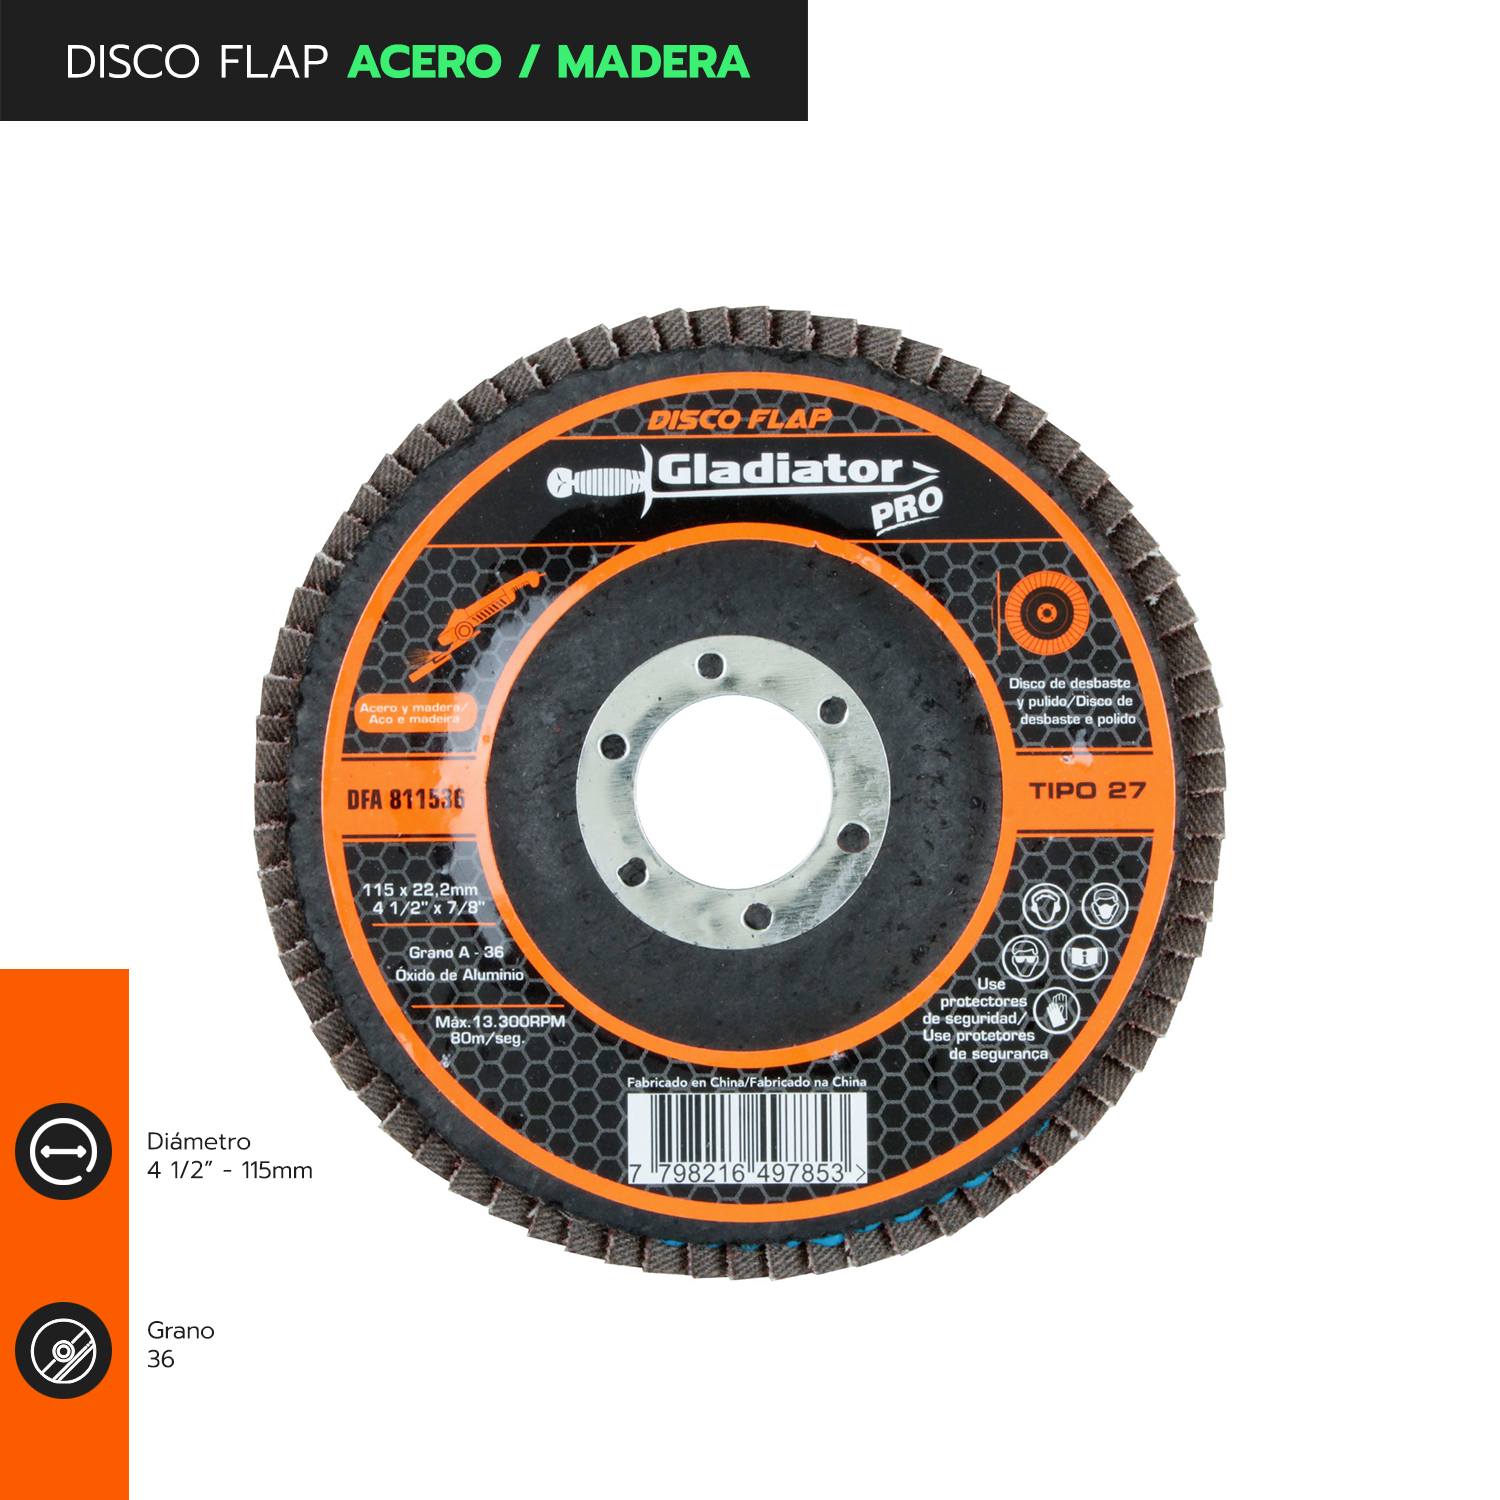 Disco Flap 4-1/2 acero y madera GR100 DFA 811510 Gladiator MI-GLA-051527